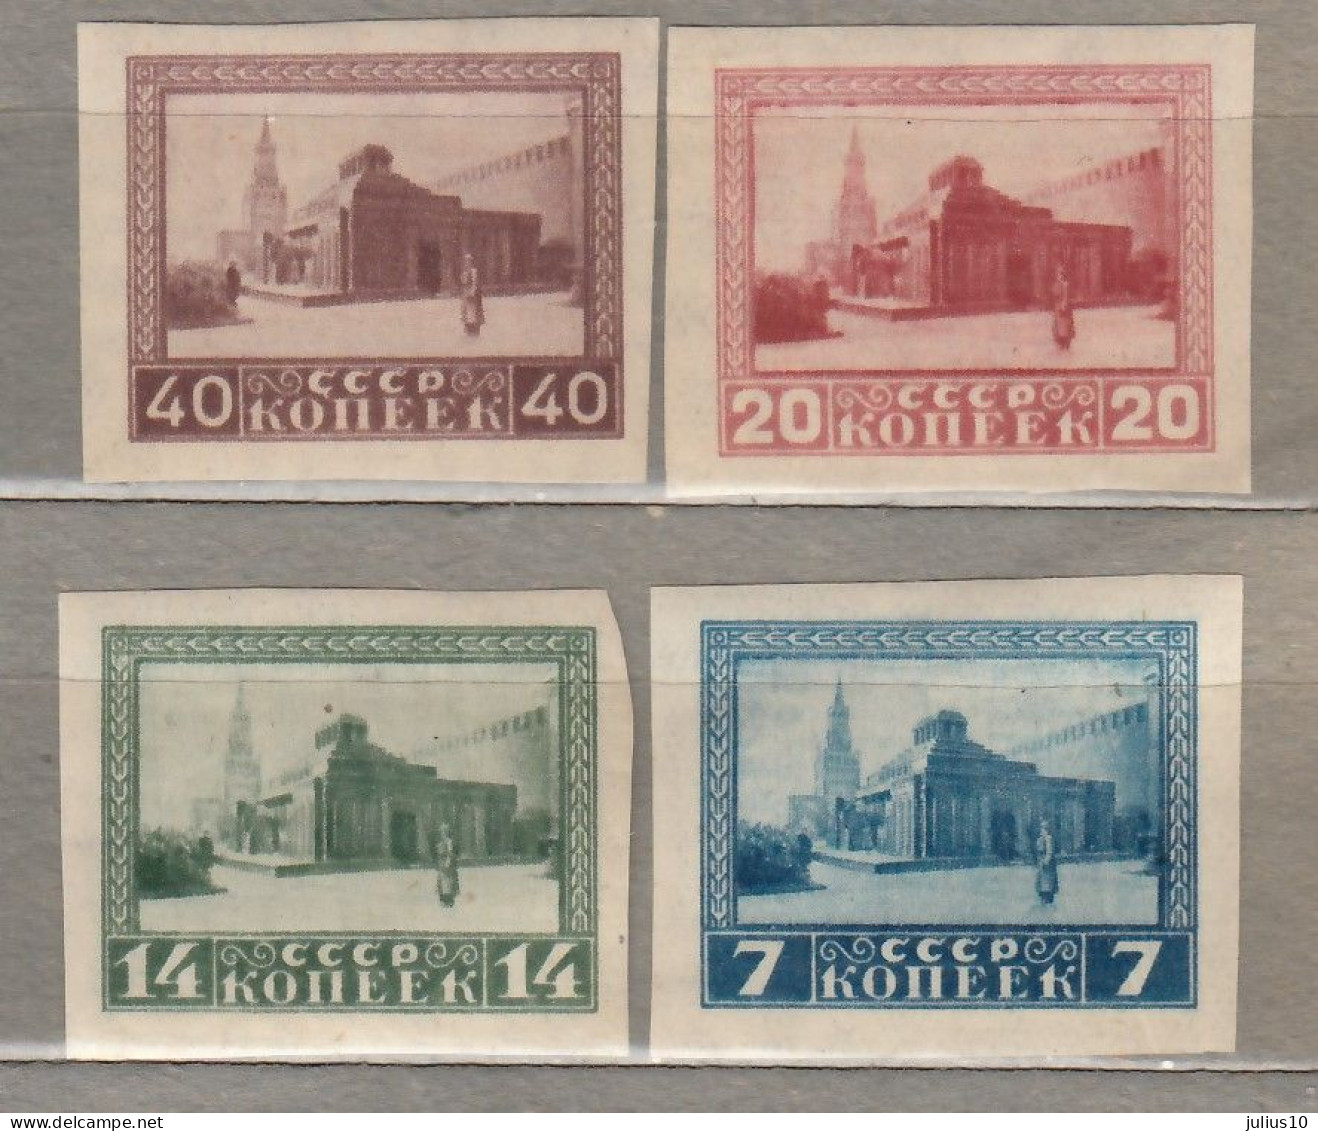 RUSSIA USSR 1925 Lenin  MNH/MH (**/*) Mi 292b-295b #Ru61 - Unused Stamps